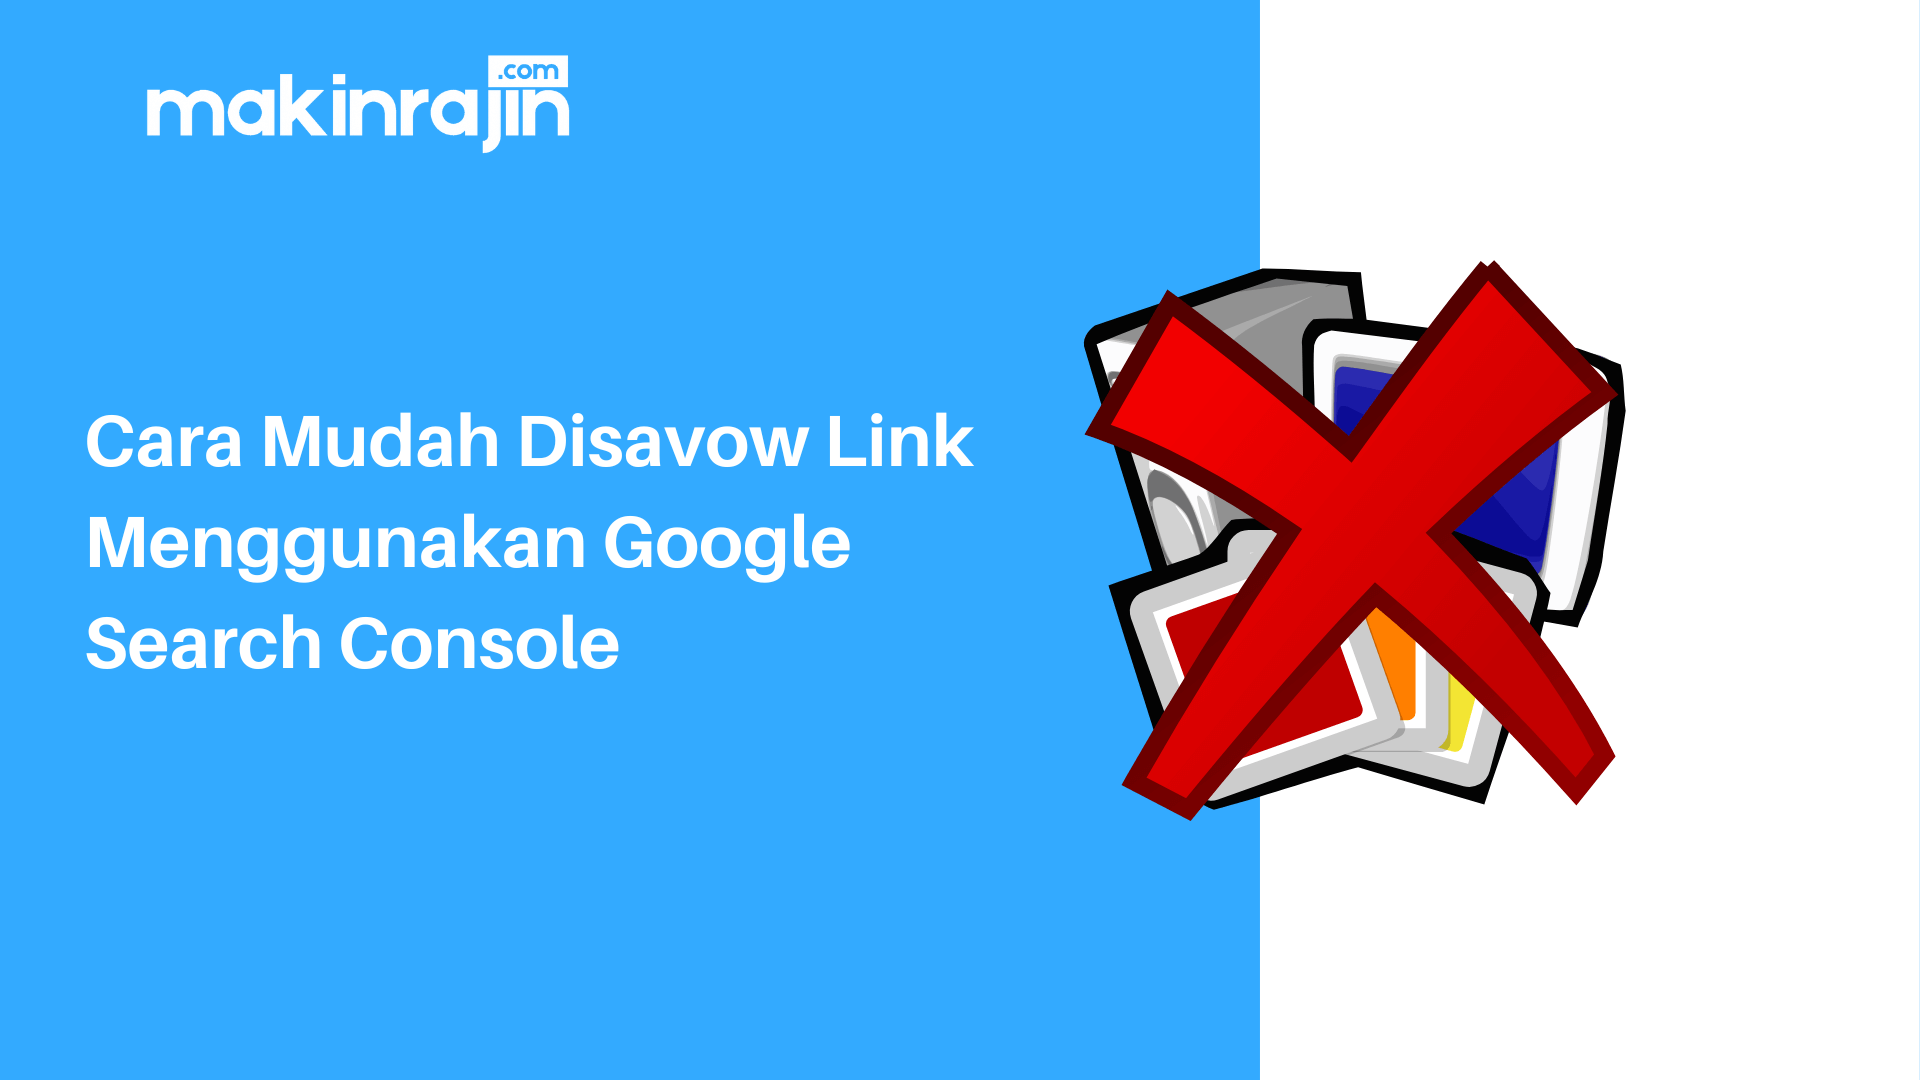 Cara Mudah Disavow Link Menggunakan Google Search Console